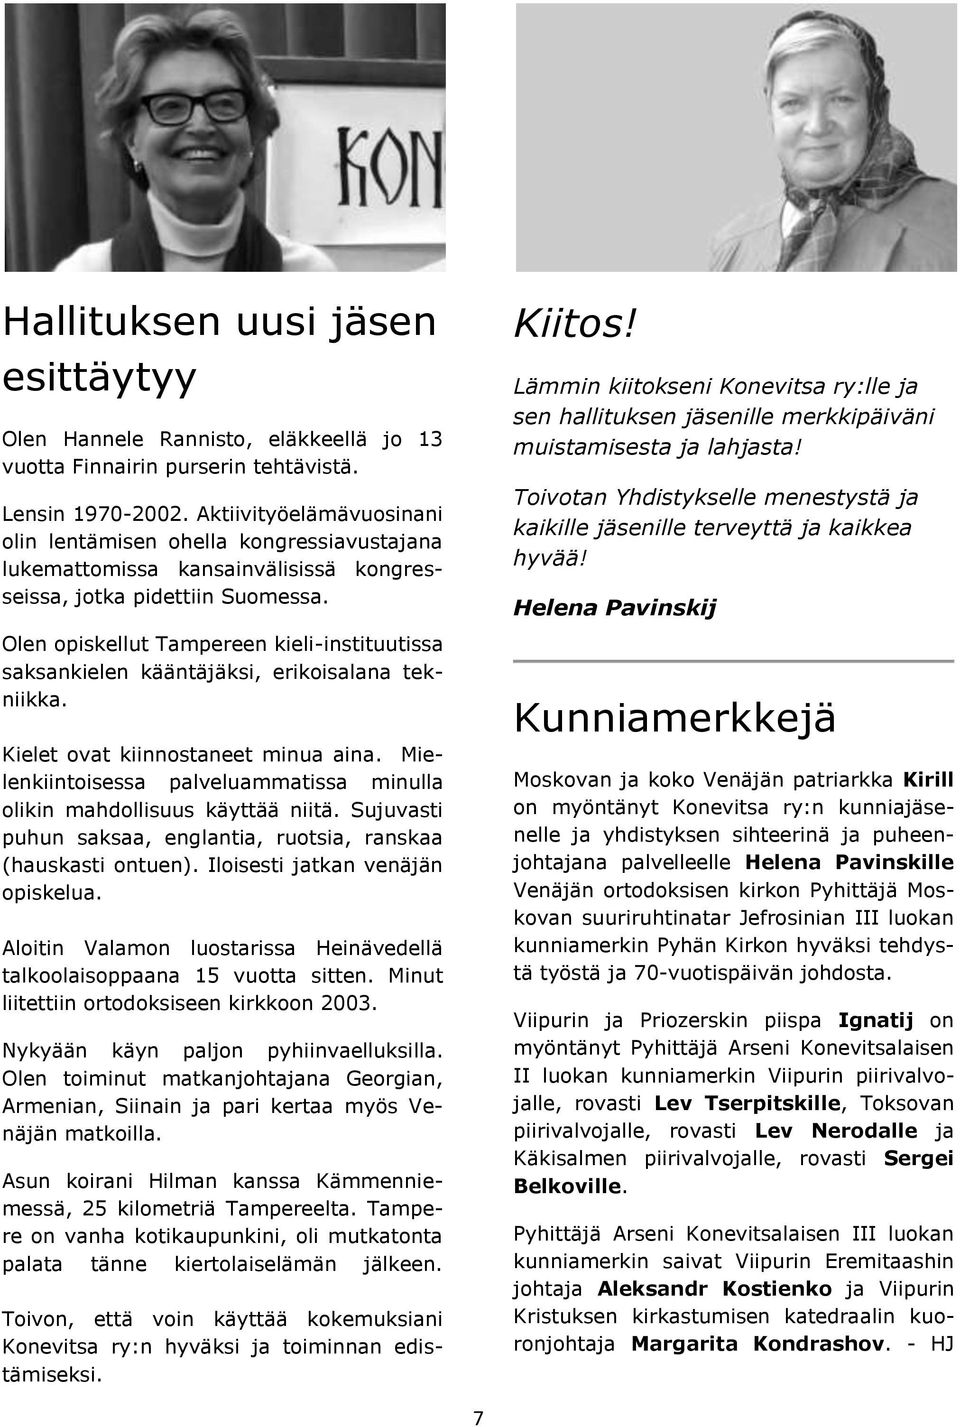 Olen opiskellut Tampereen kieli-instituutissa saksankielen kääntäjäksi, erikoisalana tekniikka. Kielet ovat kiinnostaneet minua aina.